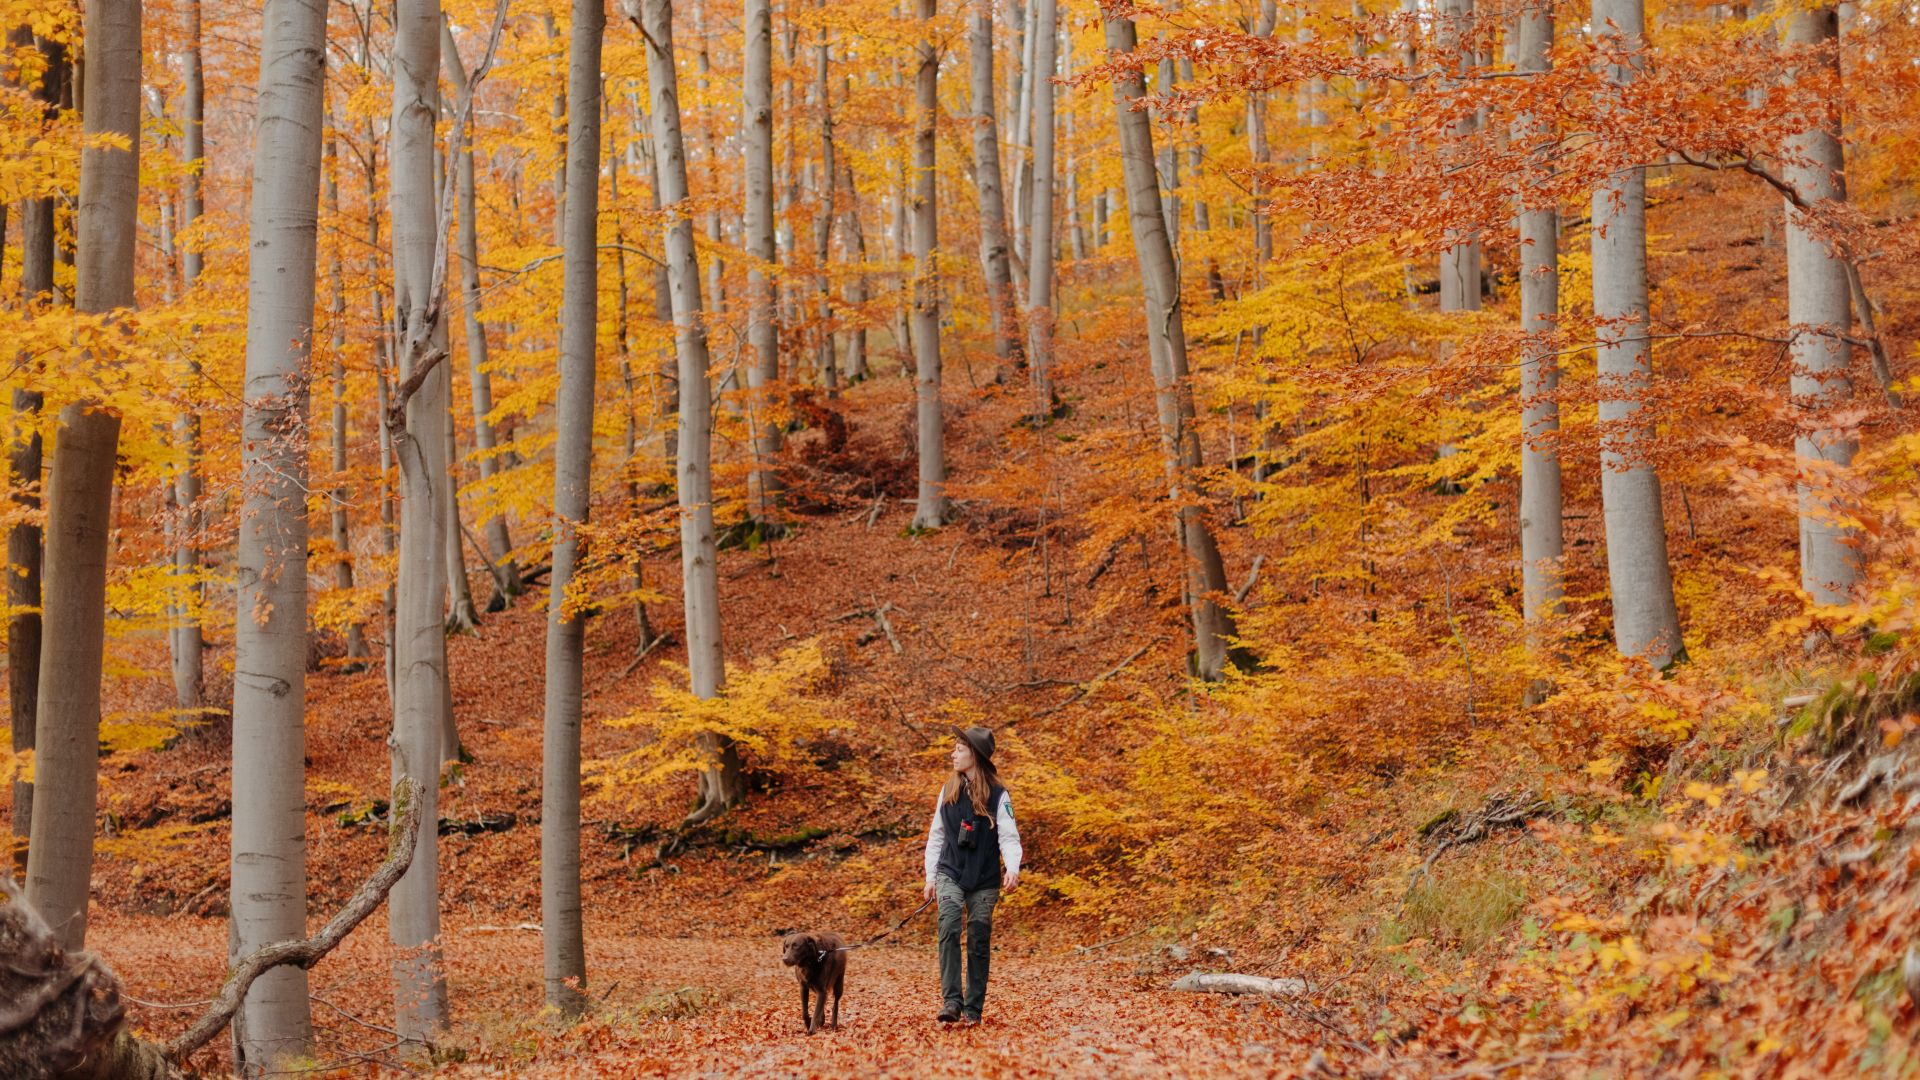 Bad Langensalza: Ranger walks with dog through autumnal forest in Hainich National Park